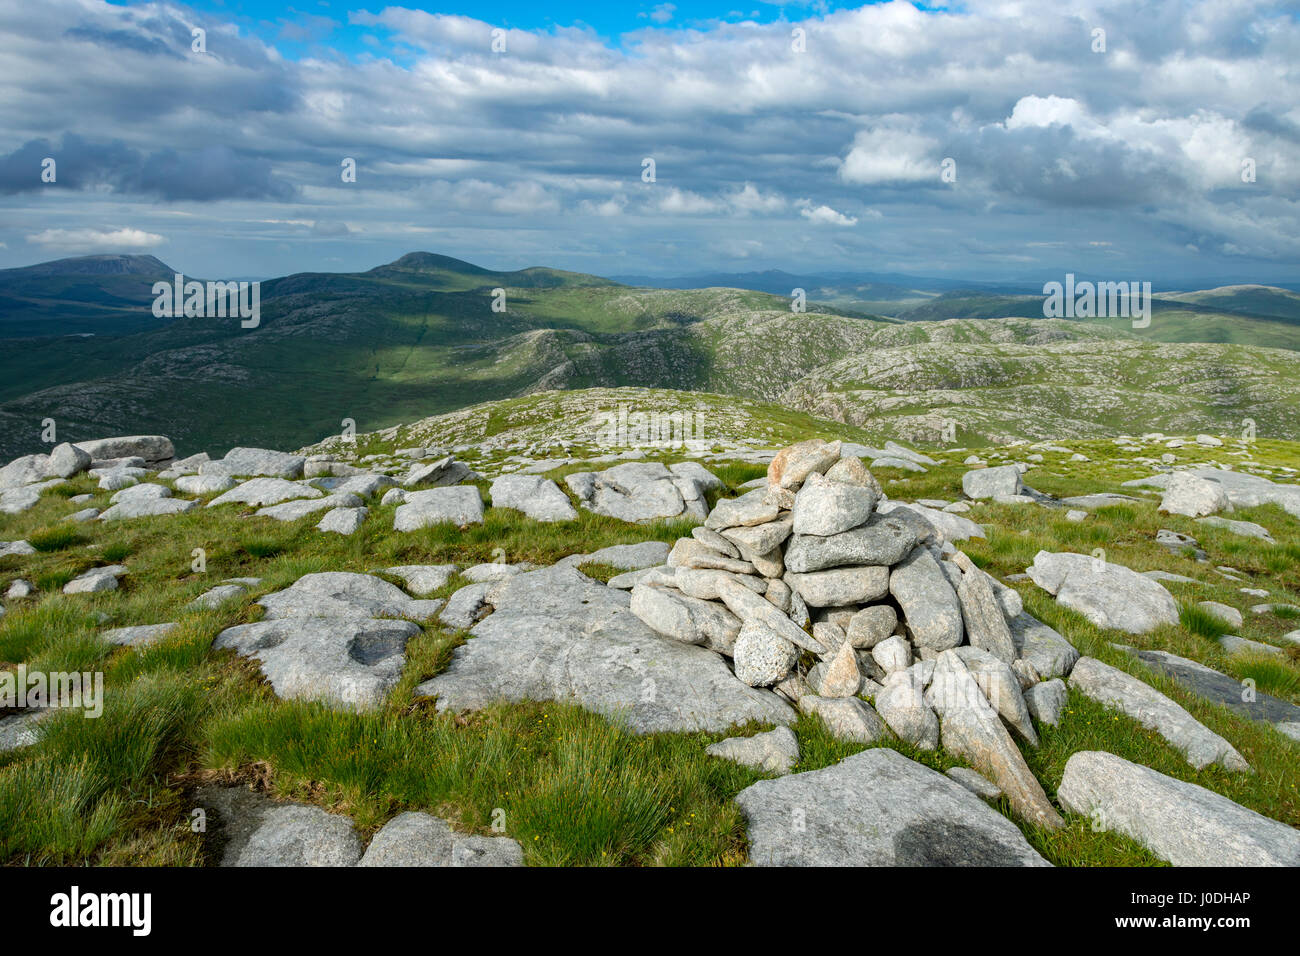 Le pic de Muckish dans la distance à l'extrême gauche, de la sommet nord de Crockfadda, dans le comté de Donegal, Irlande, Banque D'Images